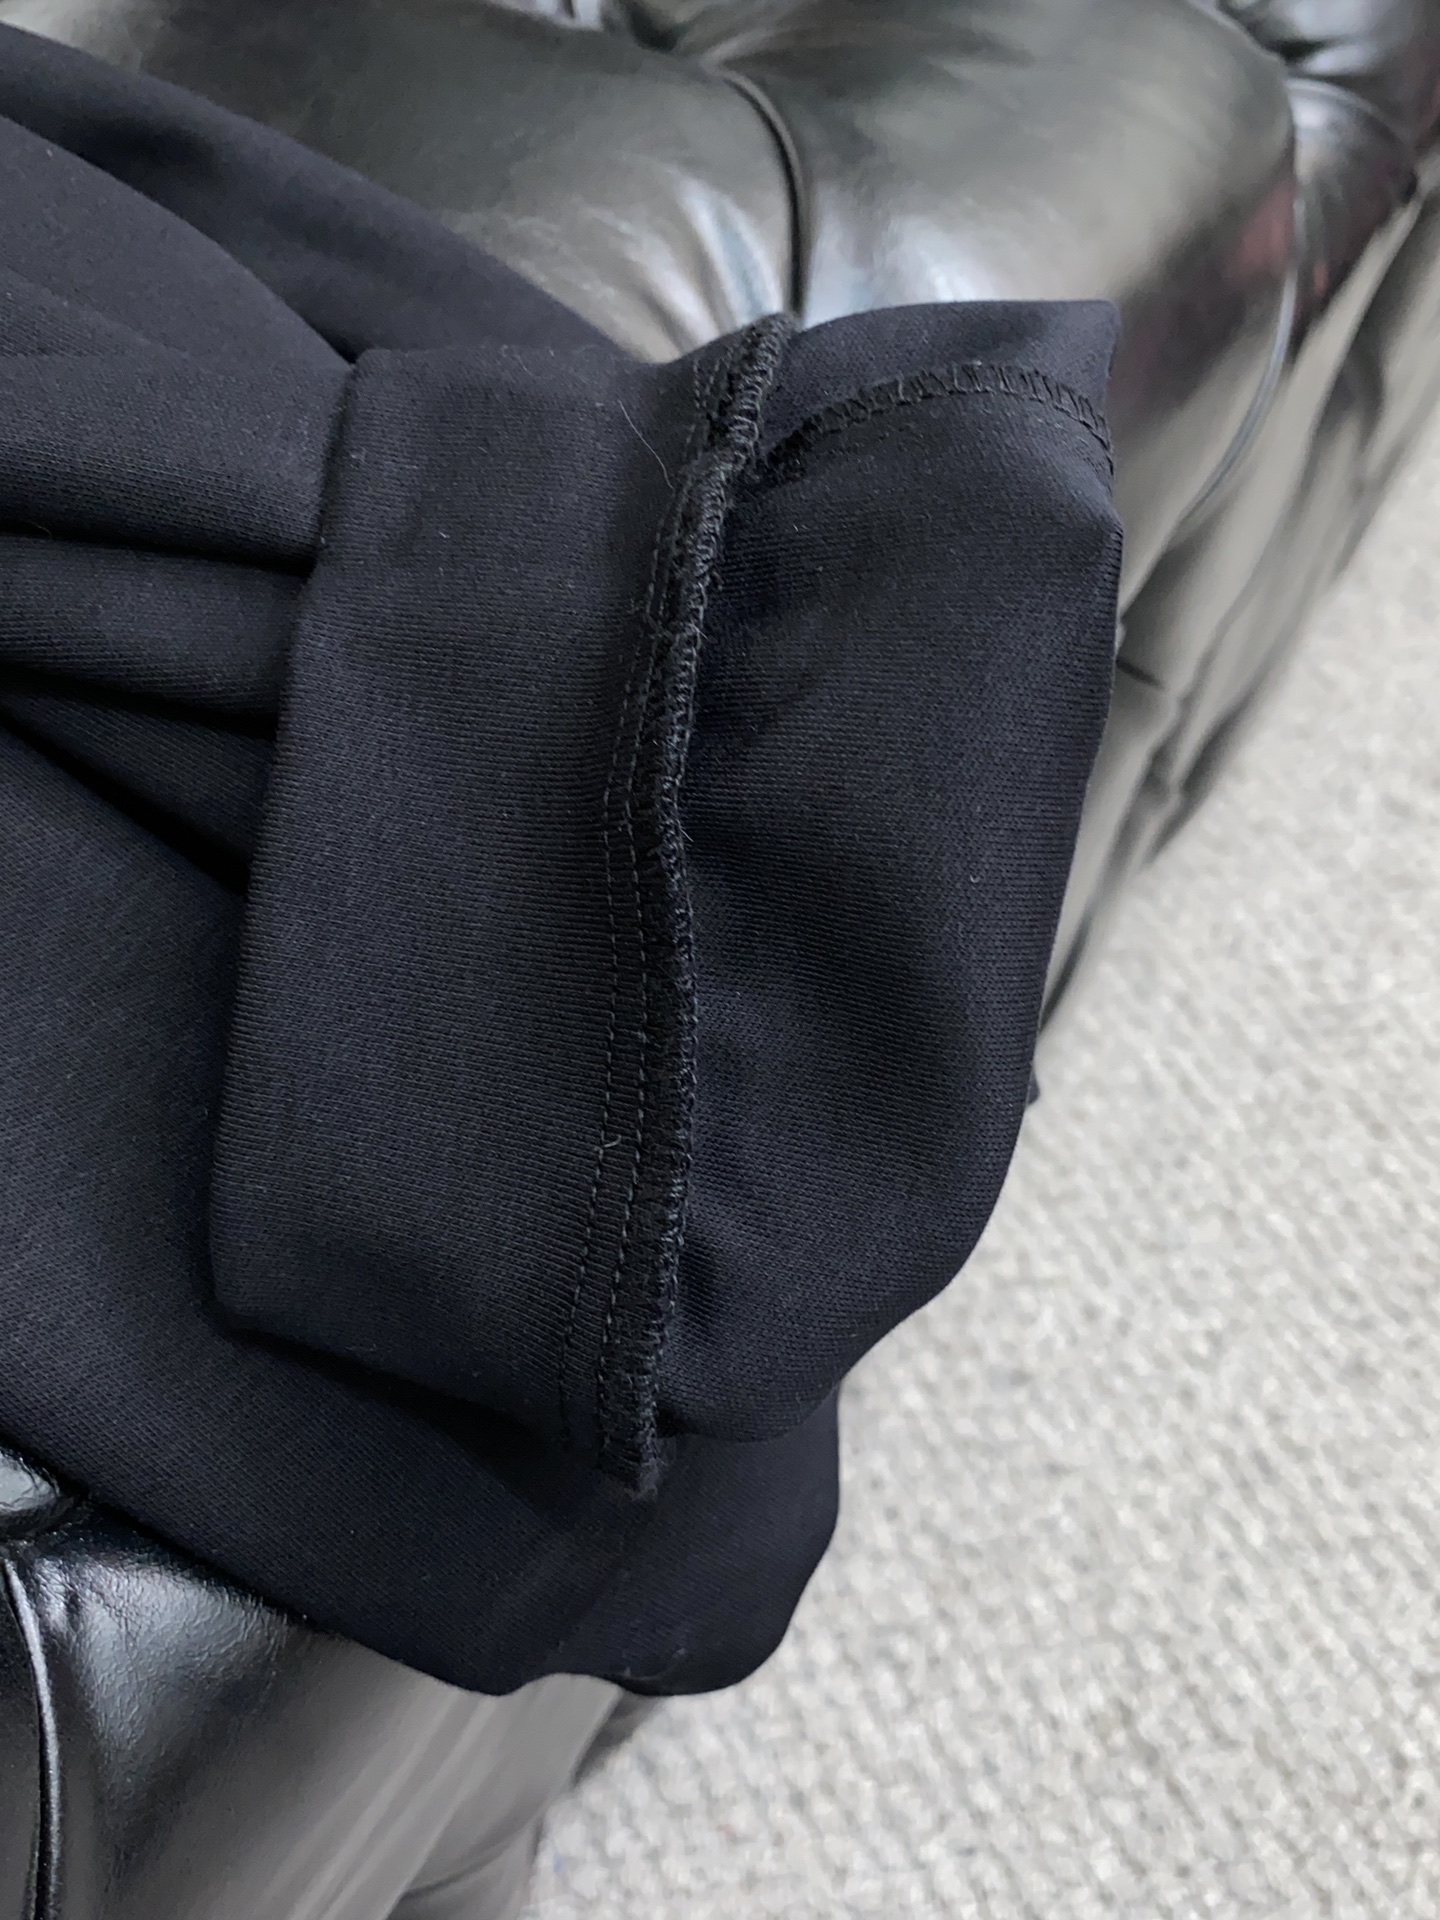 迪奥24新品同步上市原单订制高品质100%液氨棉时尚休闲裤超级百搭款独家定制面料手感细腻柔软贴身舒适上身